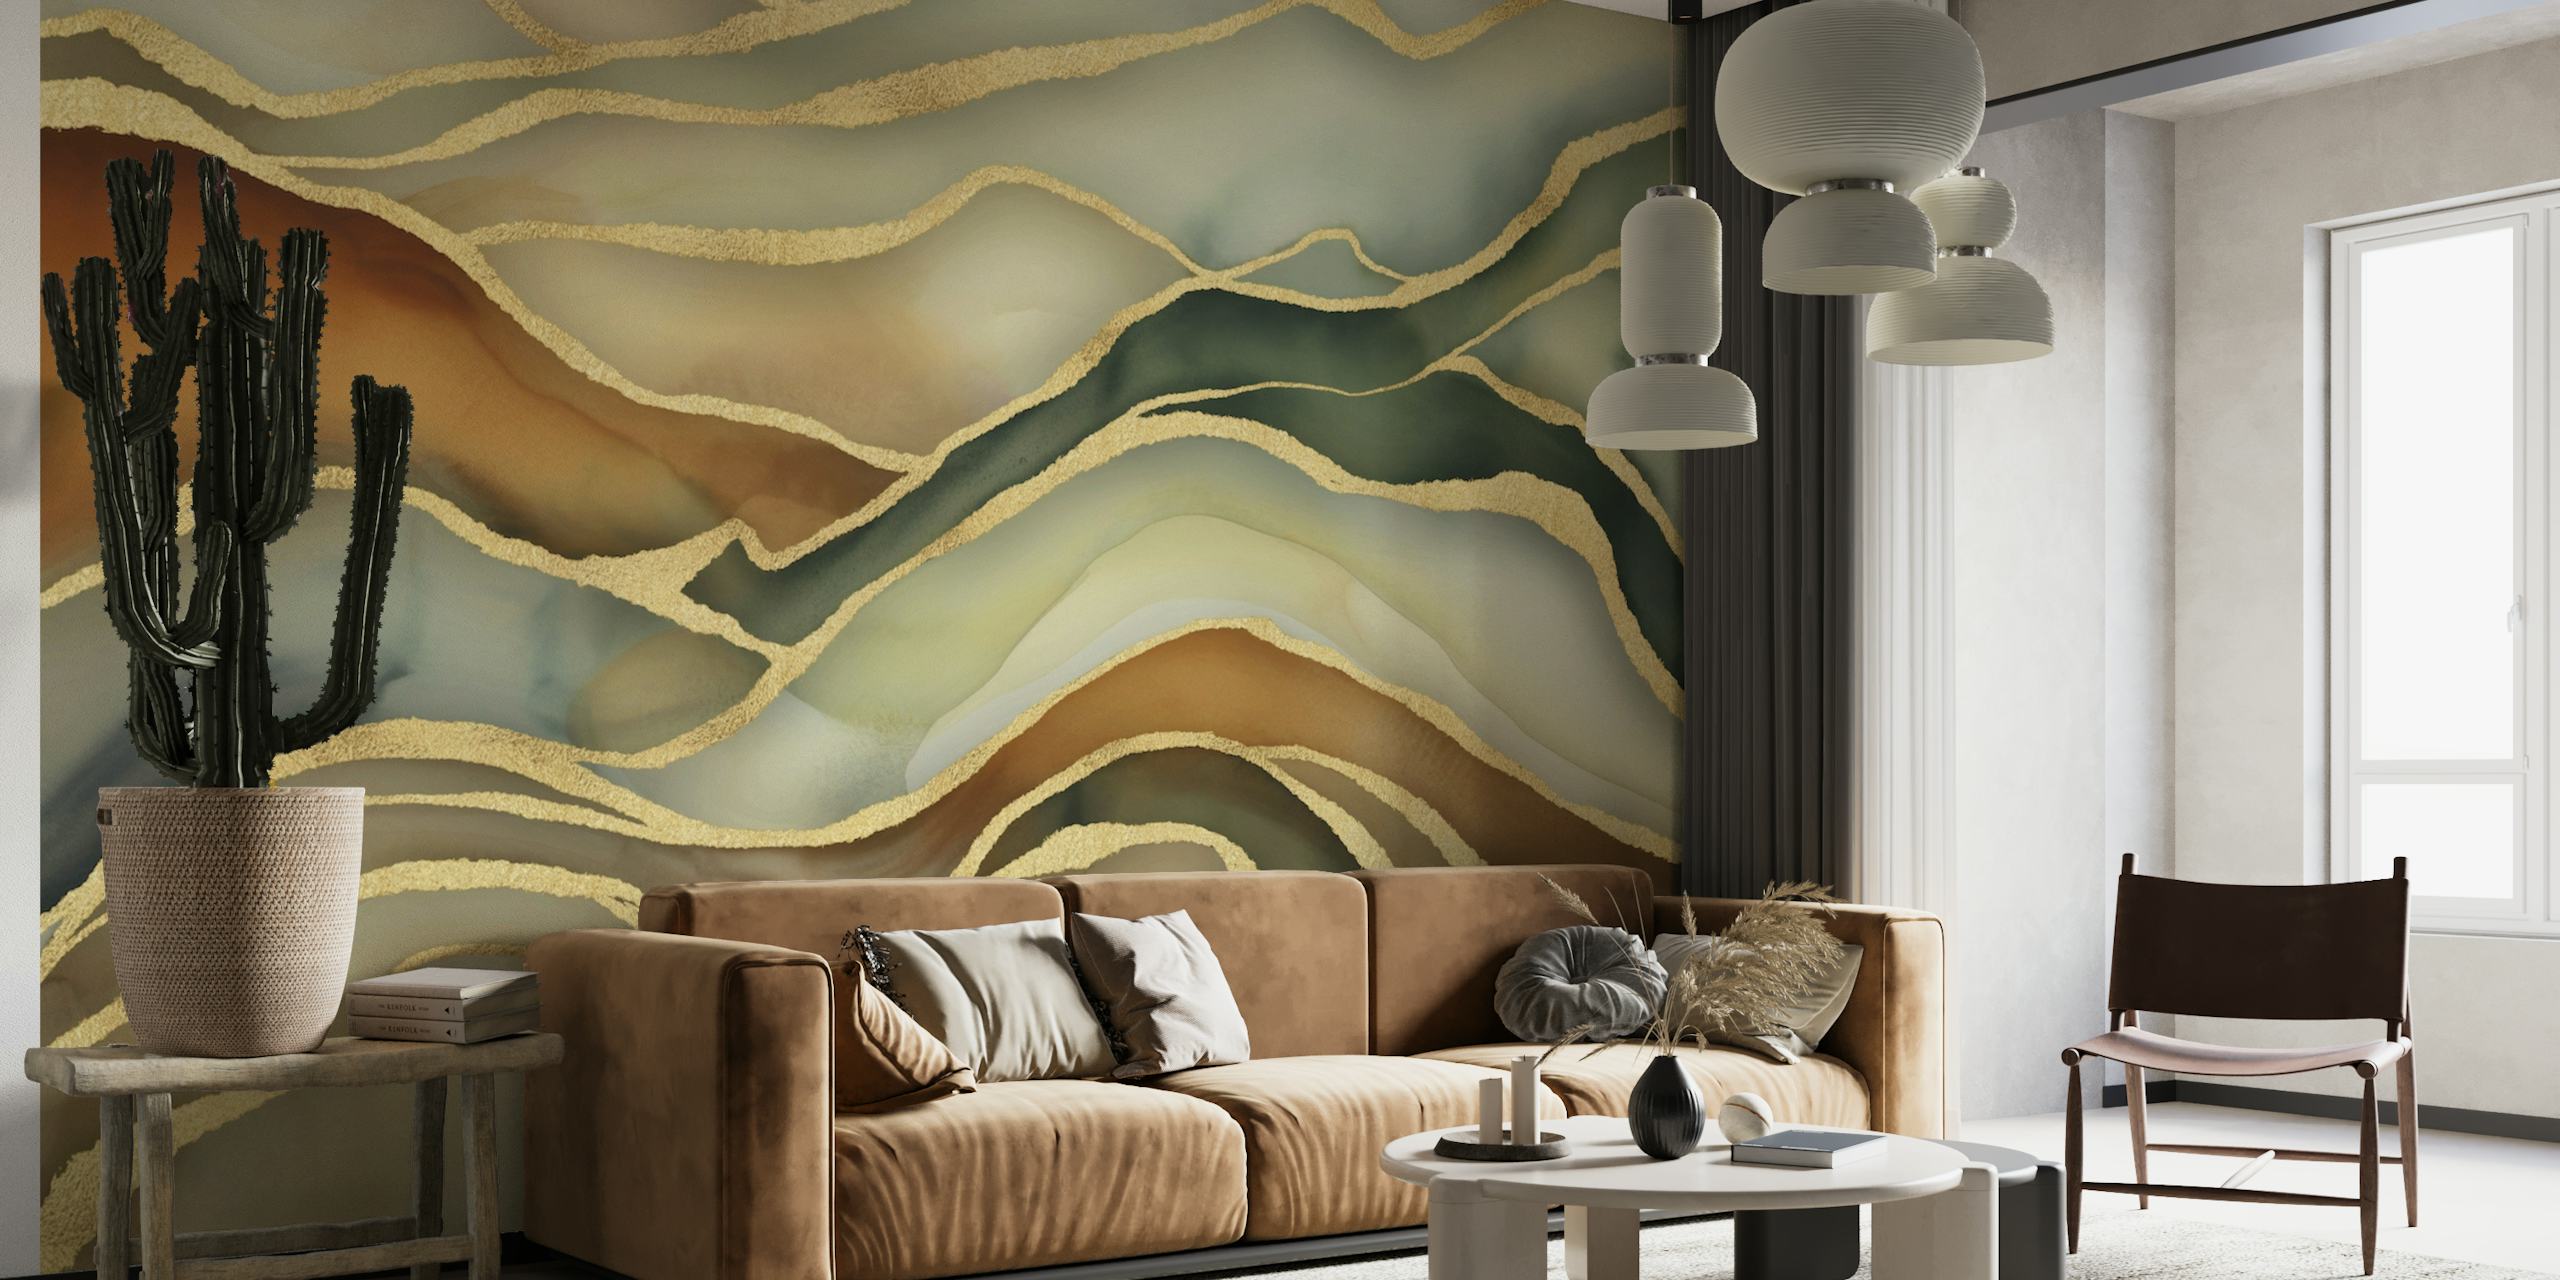 Abstrakt landskapsvegg i marmor i brune, grønne og gullfarger